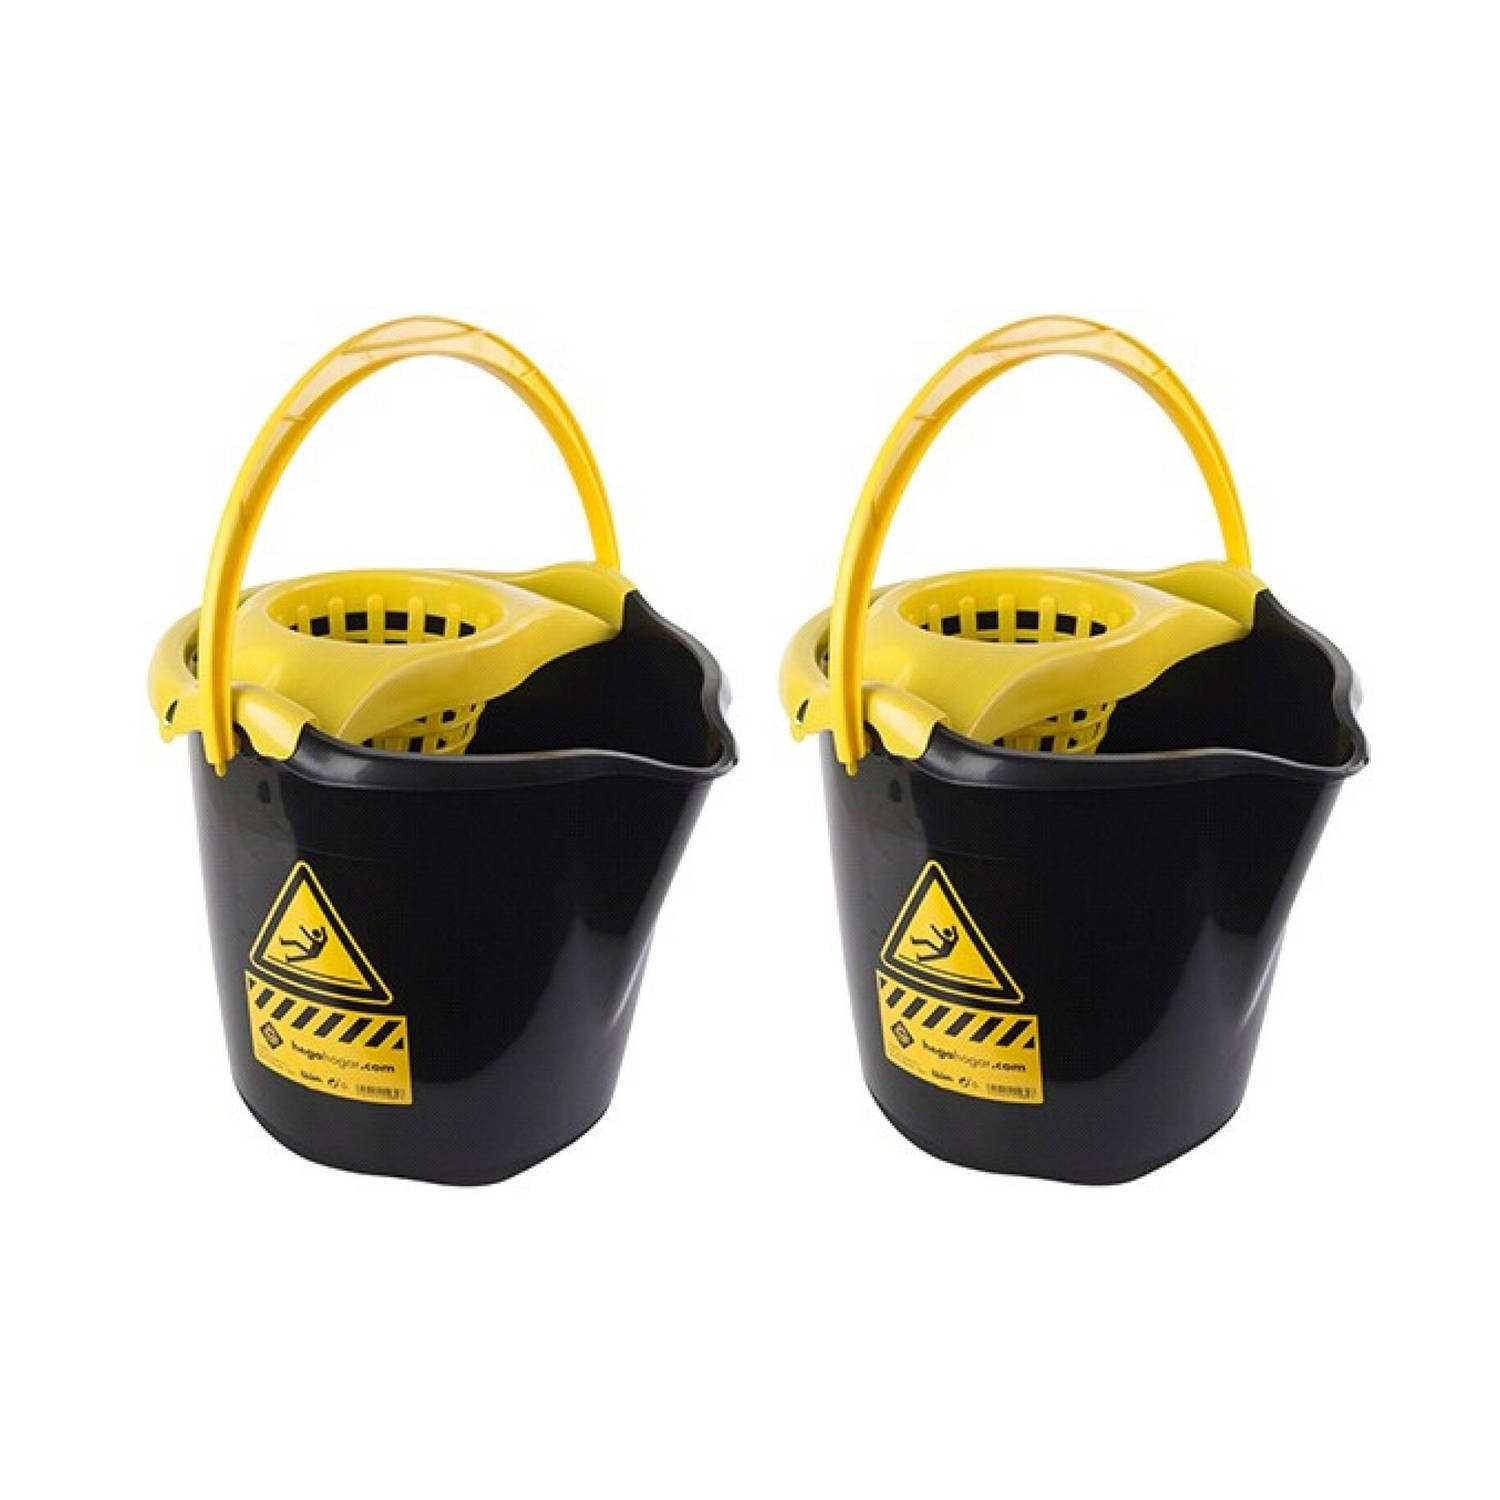 Hega hogar 2x Dweilemmers/mopemmers 13,5 liter zwart/geel caution 32 x 30 cm - Vloer reinigen/dweilen - Schoonmaakartikelen